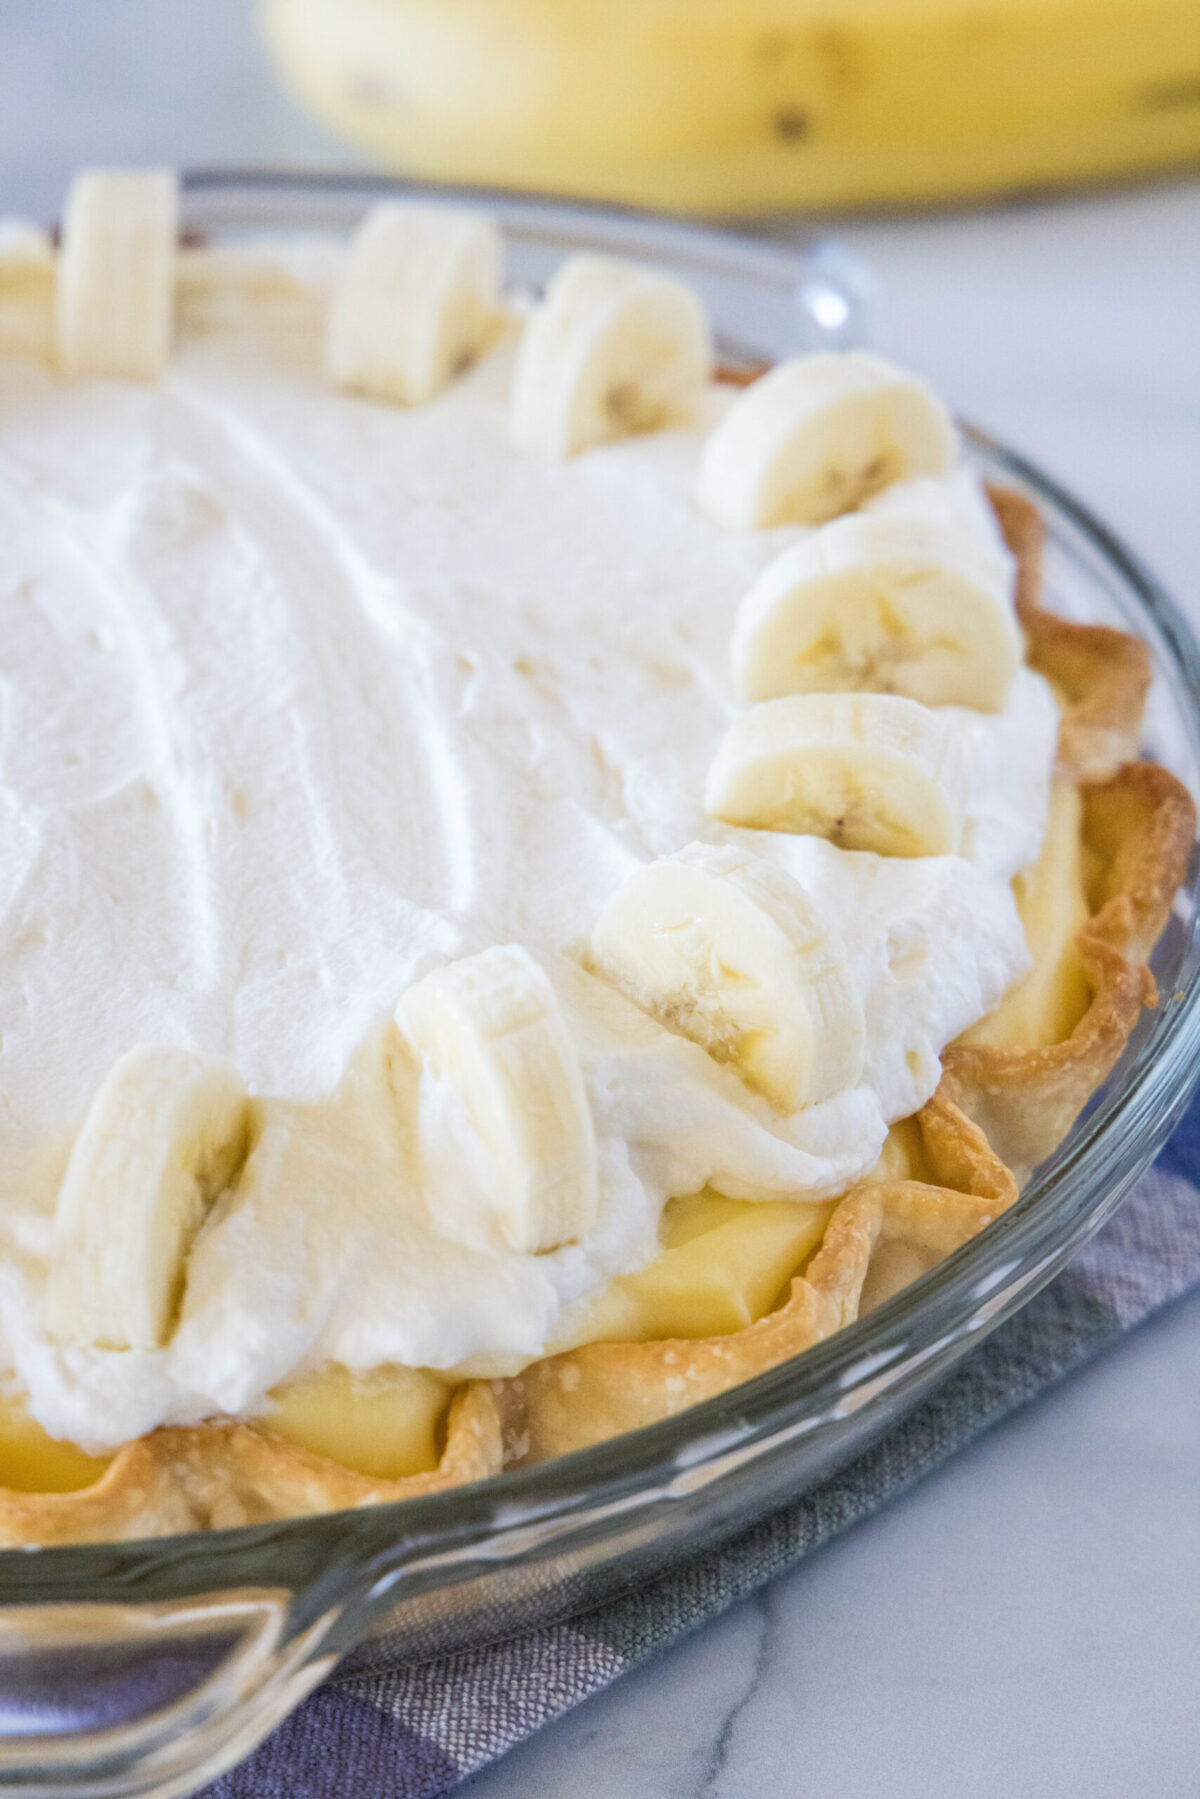 Close up view of a banana cream pie